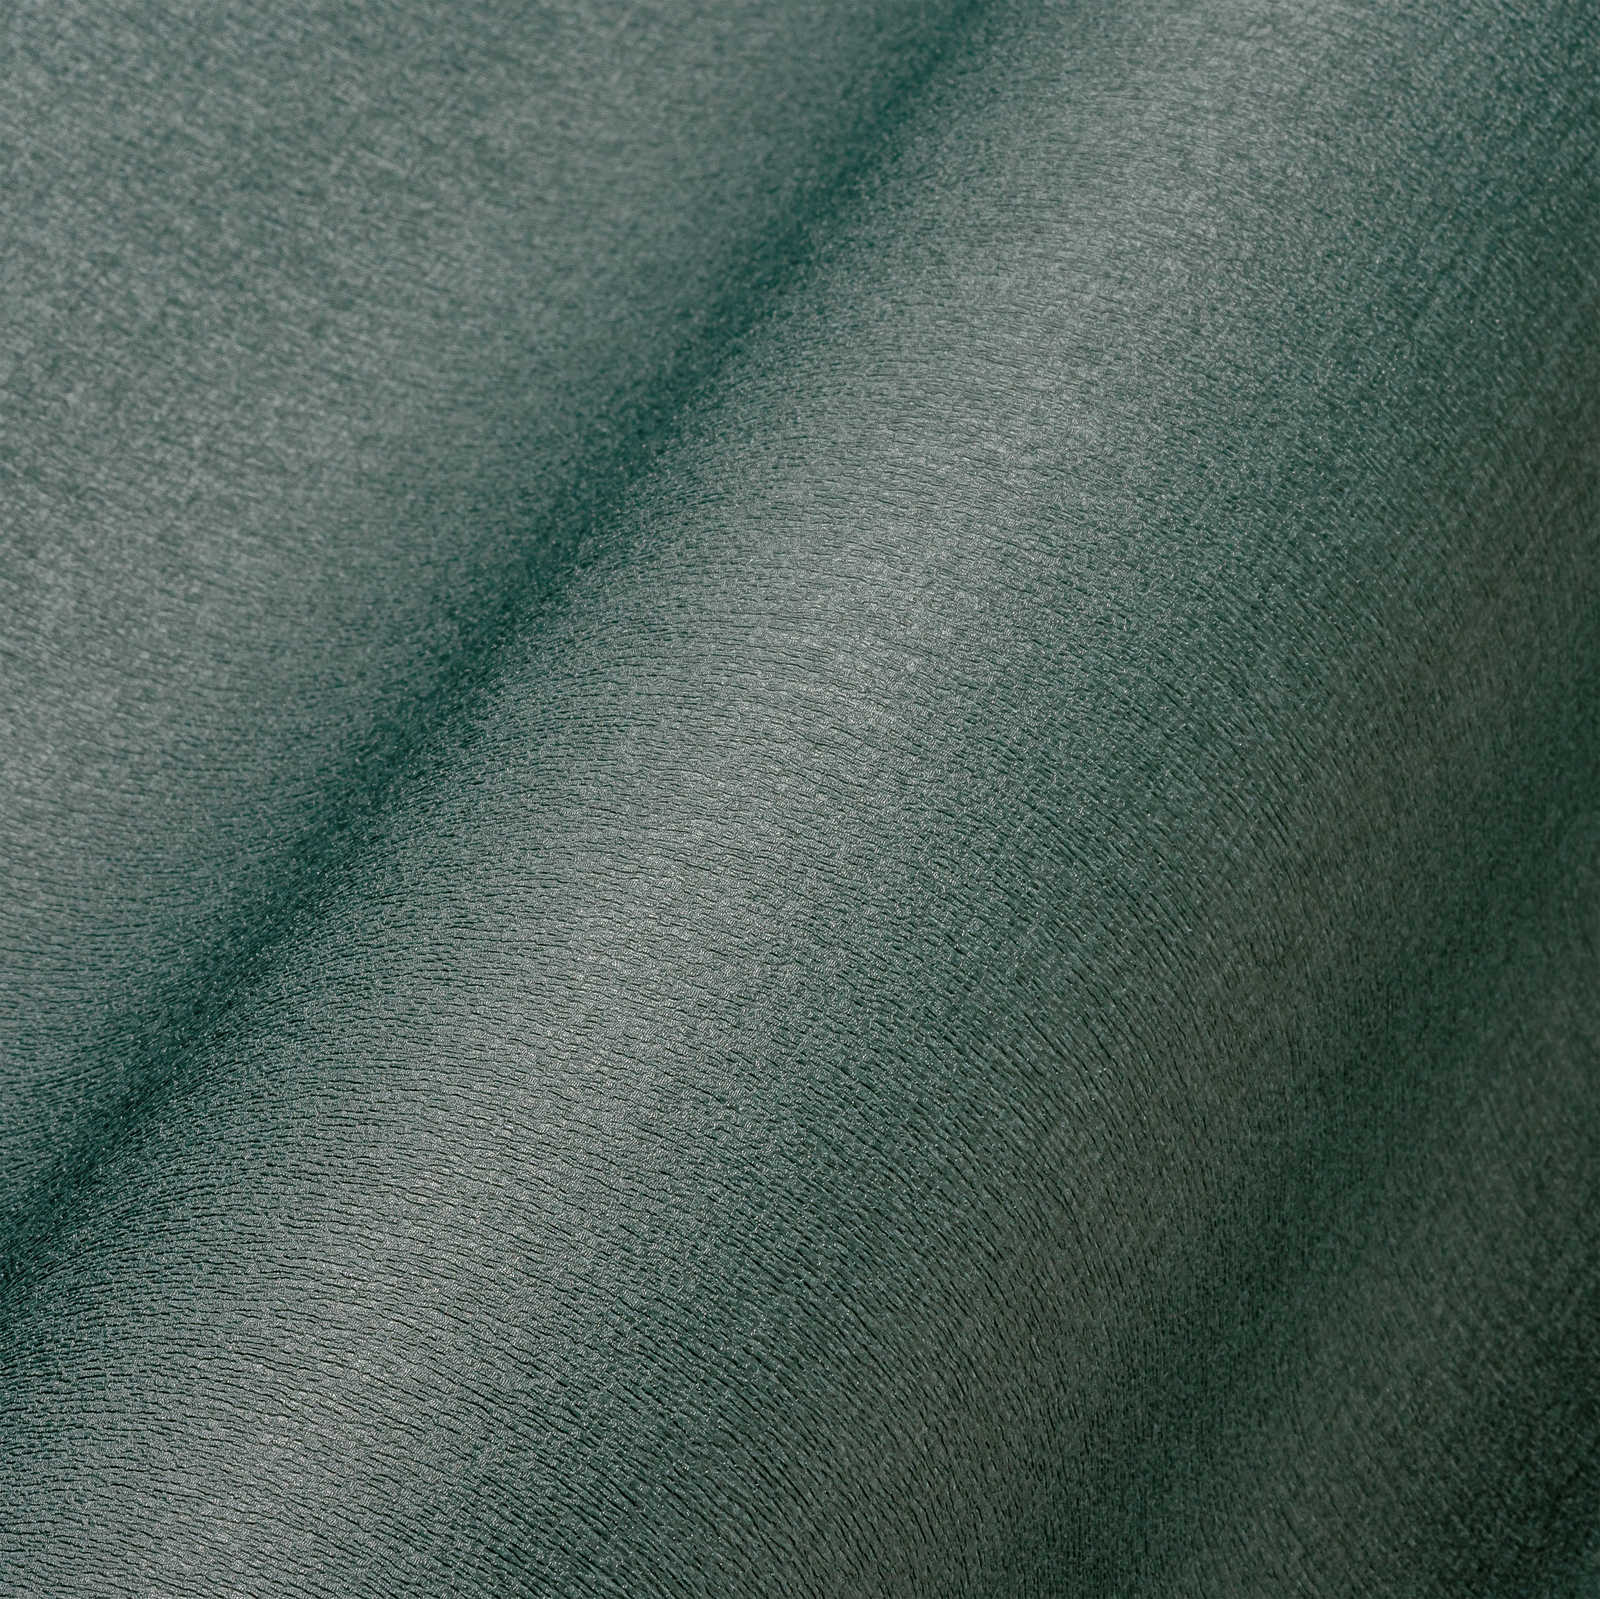             Effen eenheidsbehang in donkere kleur - petrol, groen
        